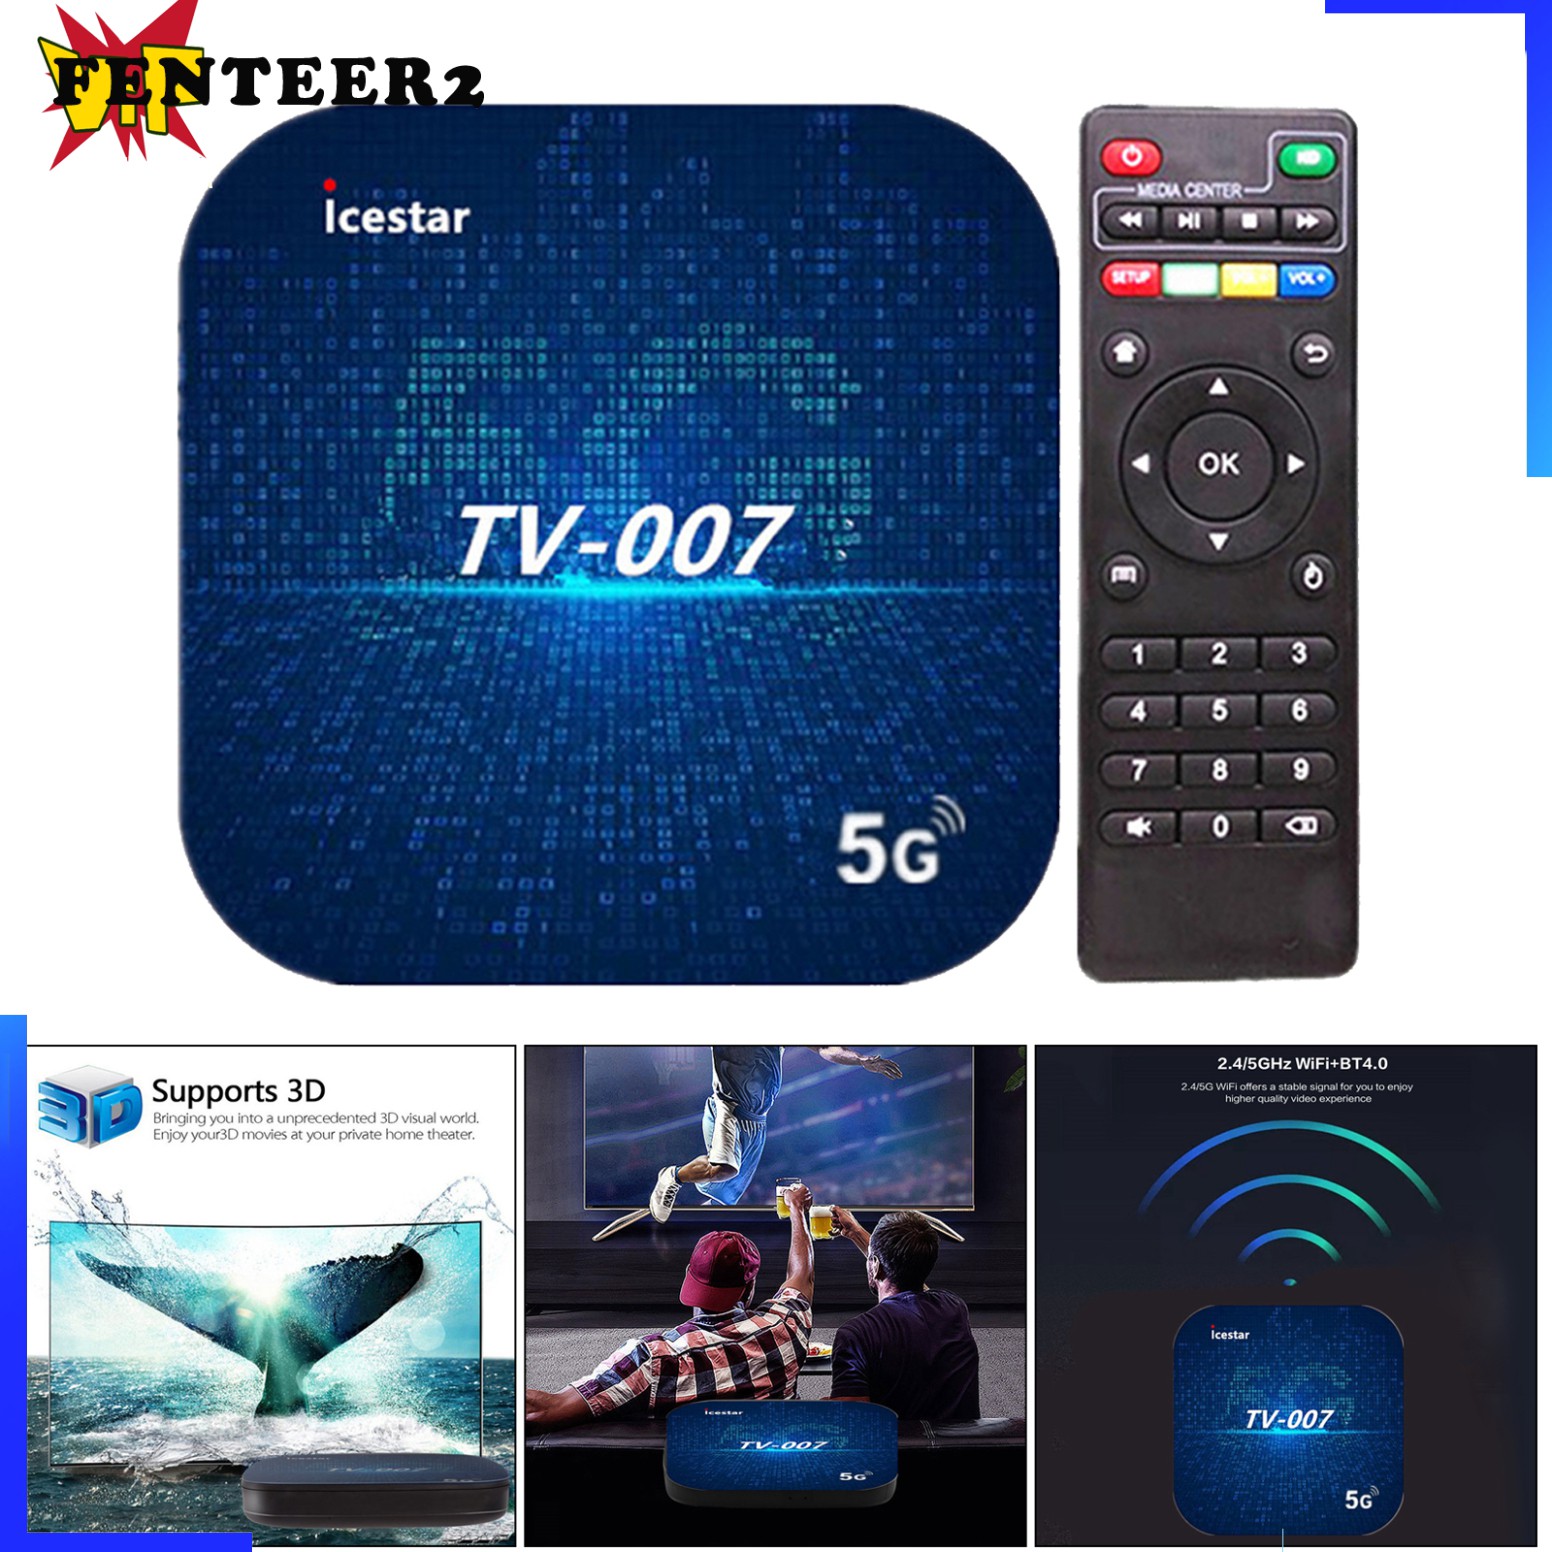 Thiết Bị Chuyển Đổi Tv Thường Thành Smart Tv Android 9.0 Tv Box Media Player 5g